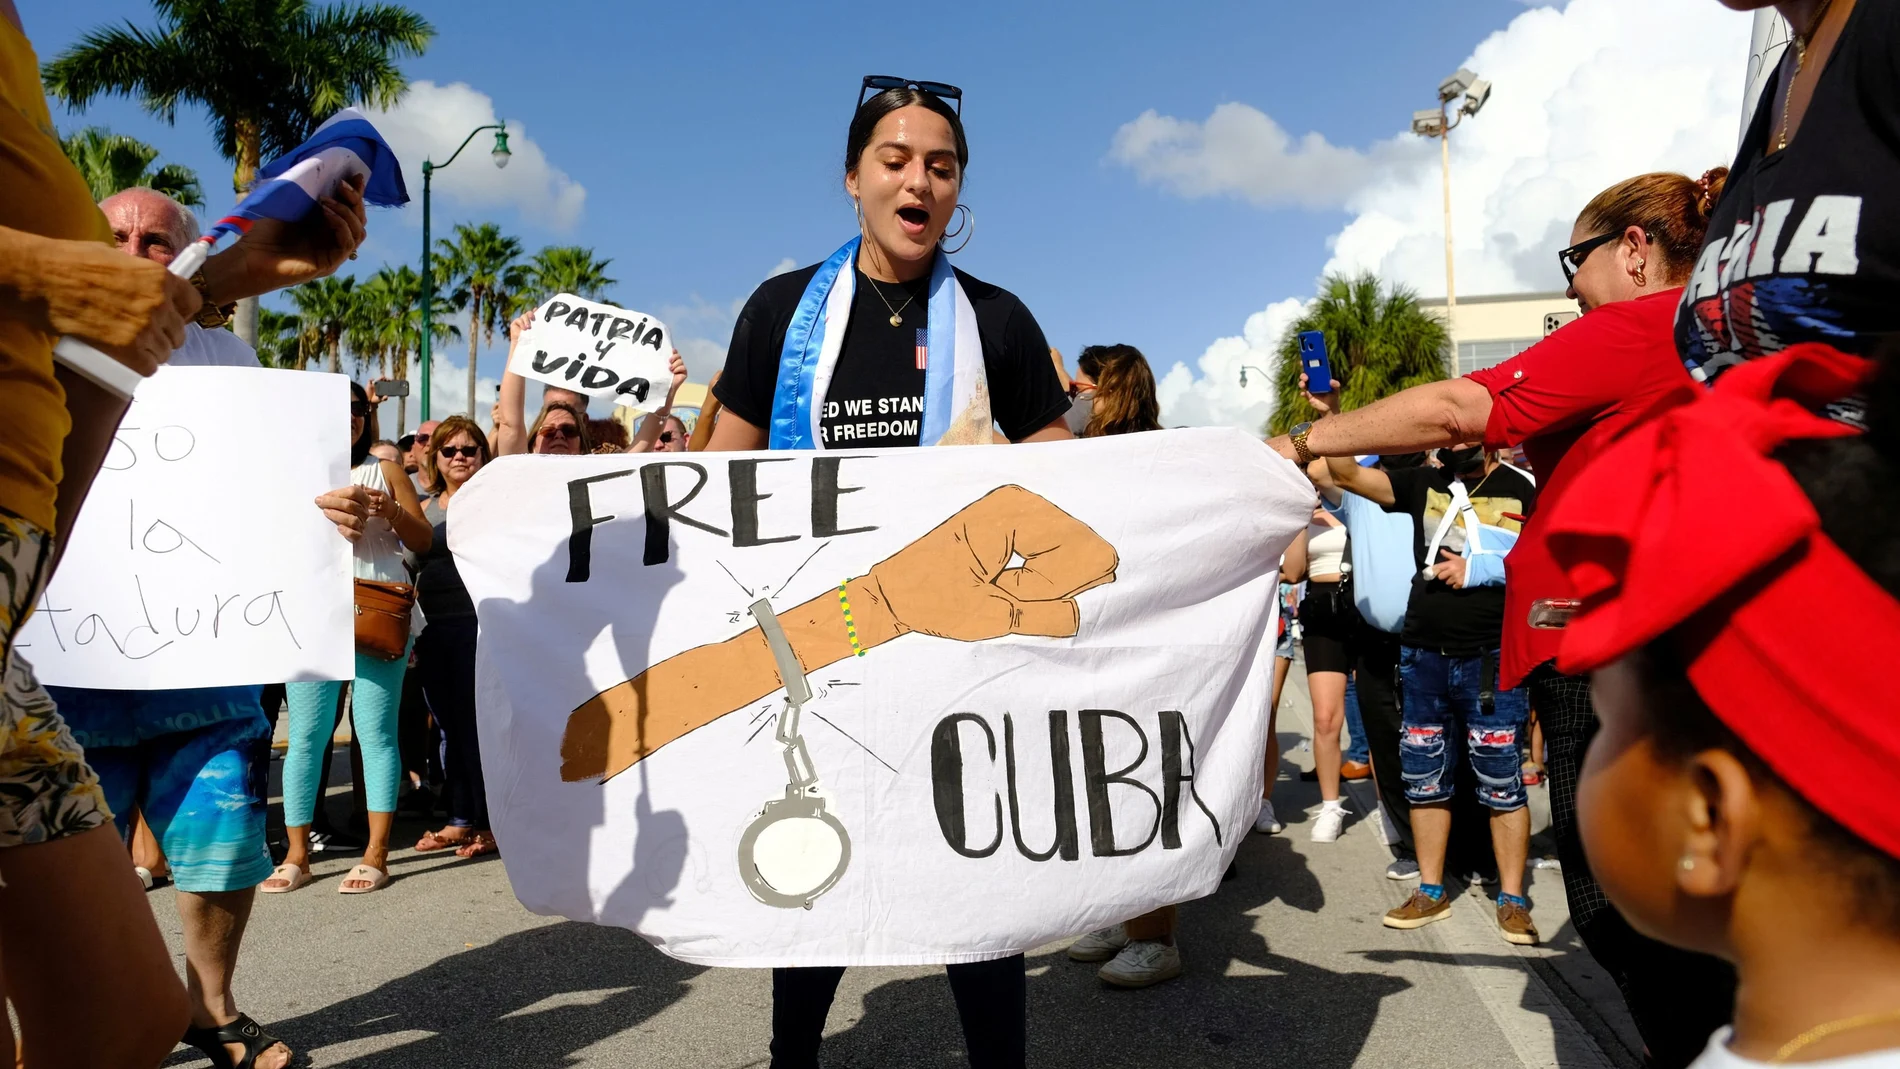 Miles de cubanos tomaron las calles para protestar contra el Gobierno al grito de “¡libertad!” en una jornada inédita que se saldó con cientos de detenidos y enfrentamientos. Reuters